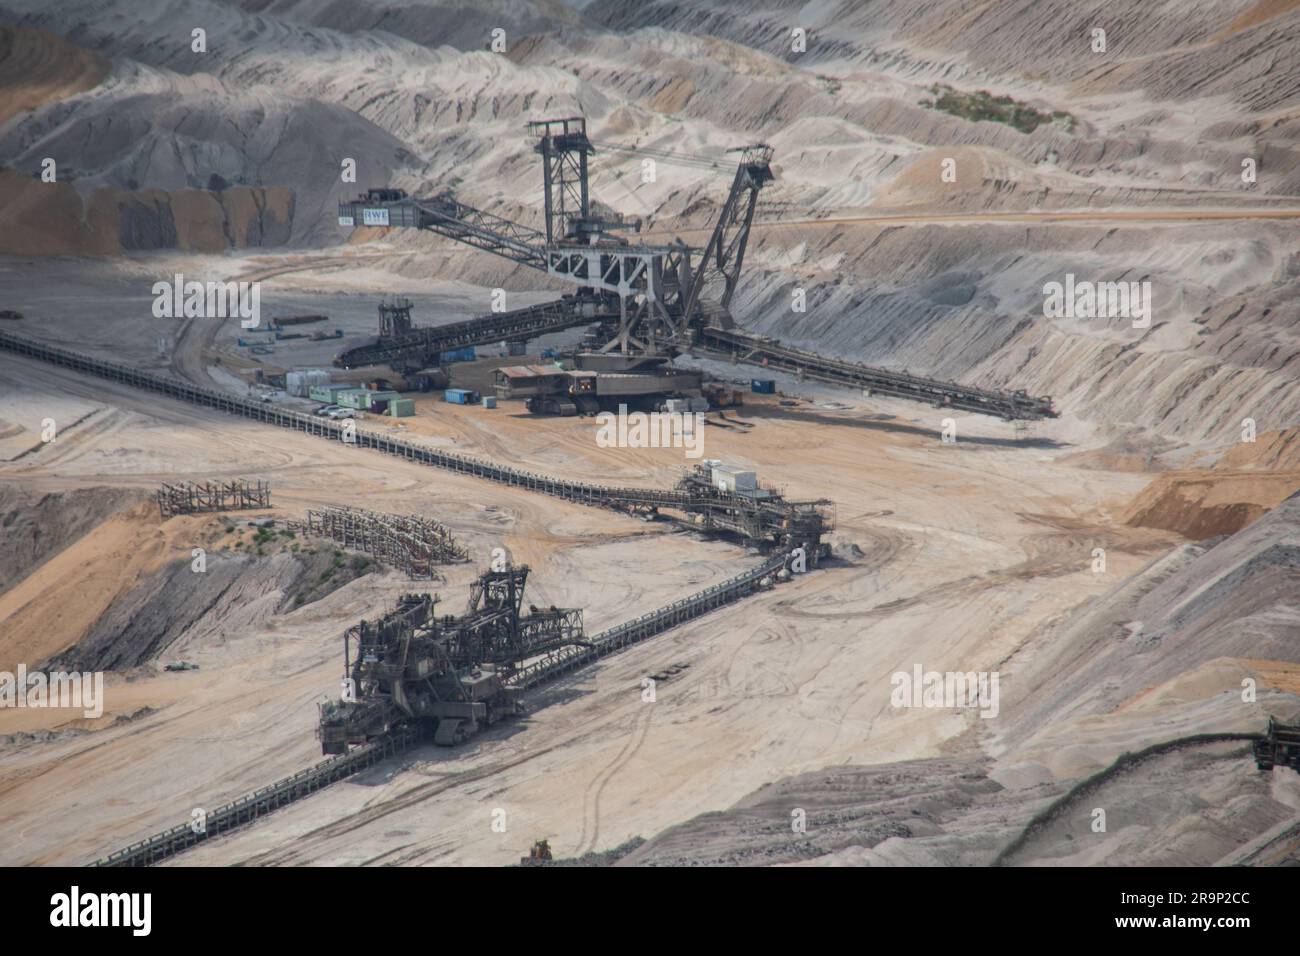 Extraction de lignite dans des mines à ciel ouvert de la forêt de Hambach, en Allemagne Banque D'Images